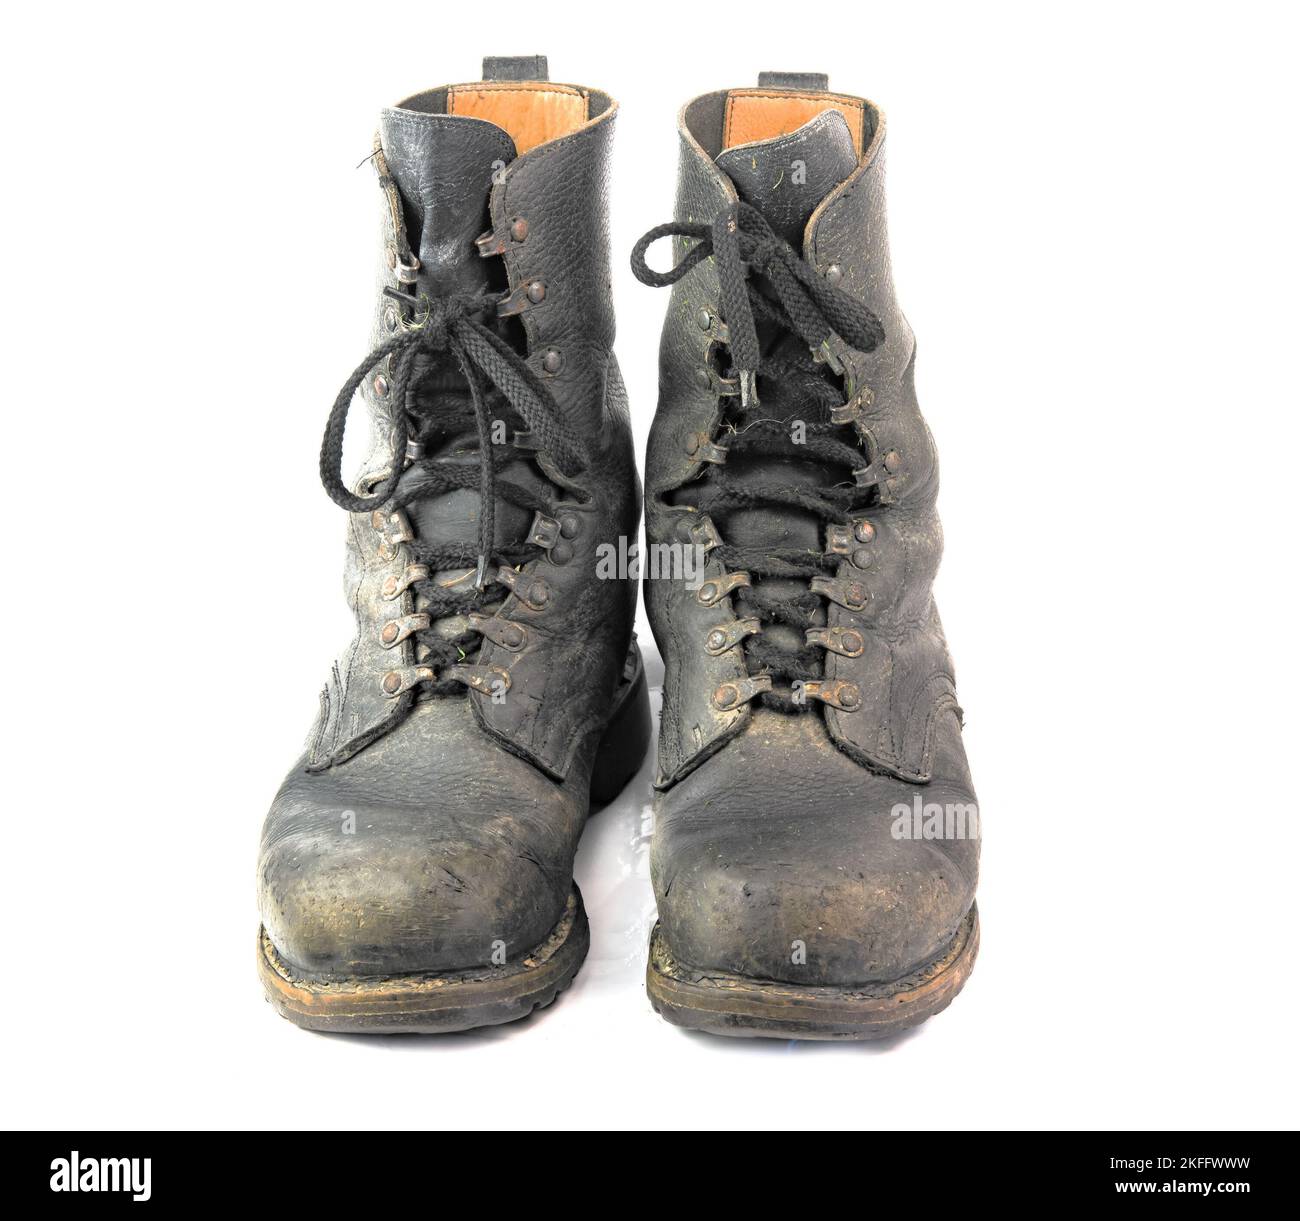 chaussures militaires sales isolées sur fond blanc Banque D'Images